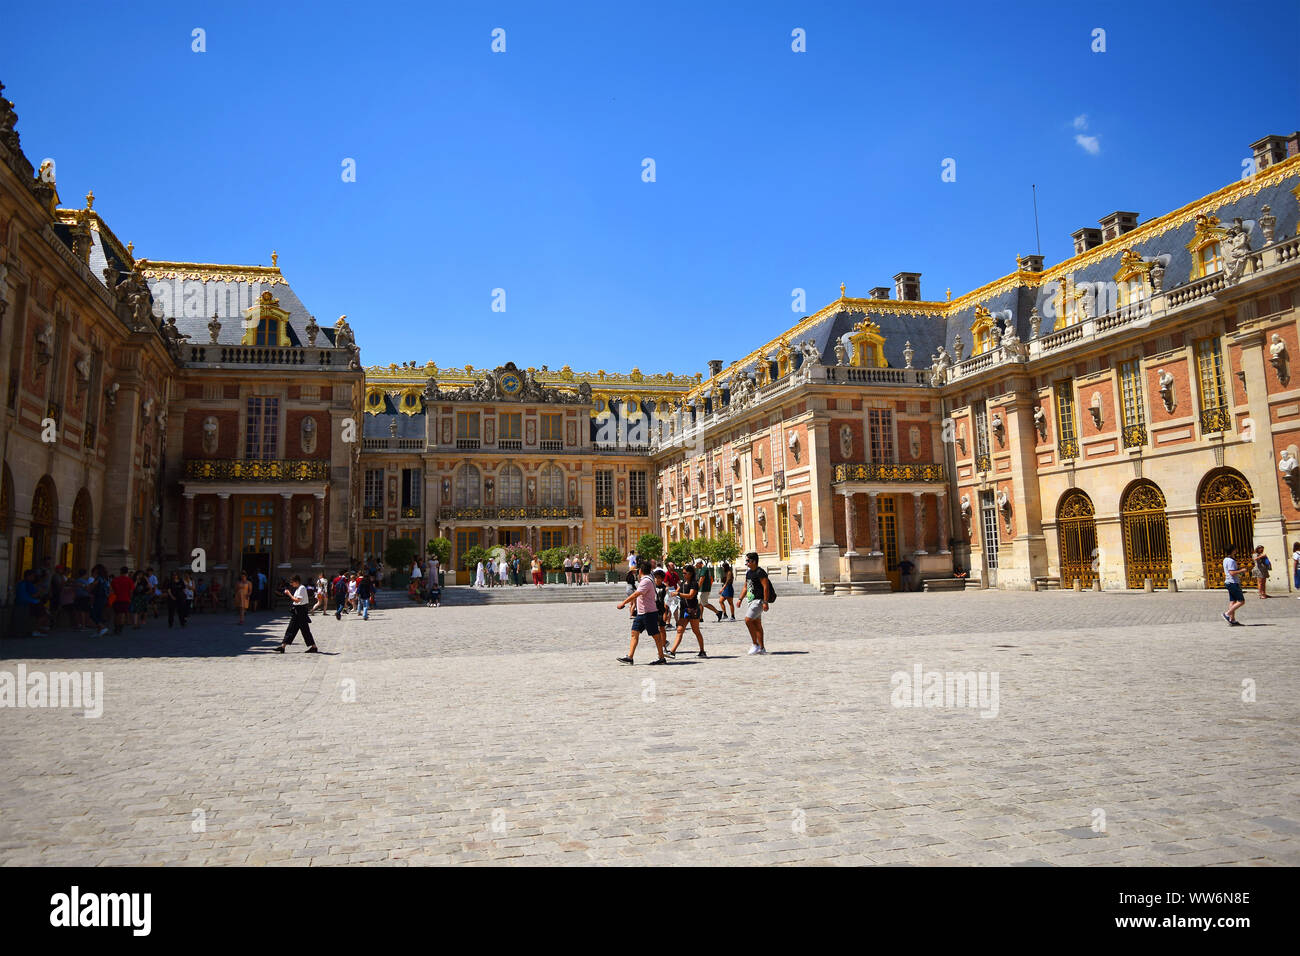 Paris / France - Juillet 6, 2019 : Des groupes de touristes dans la place principale de Palais de Versailles, l'heure d'été. Banque D'Images